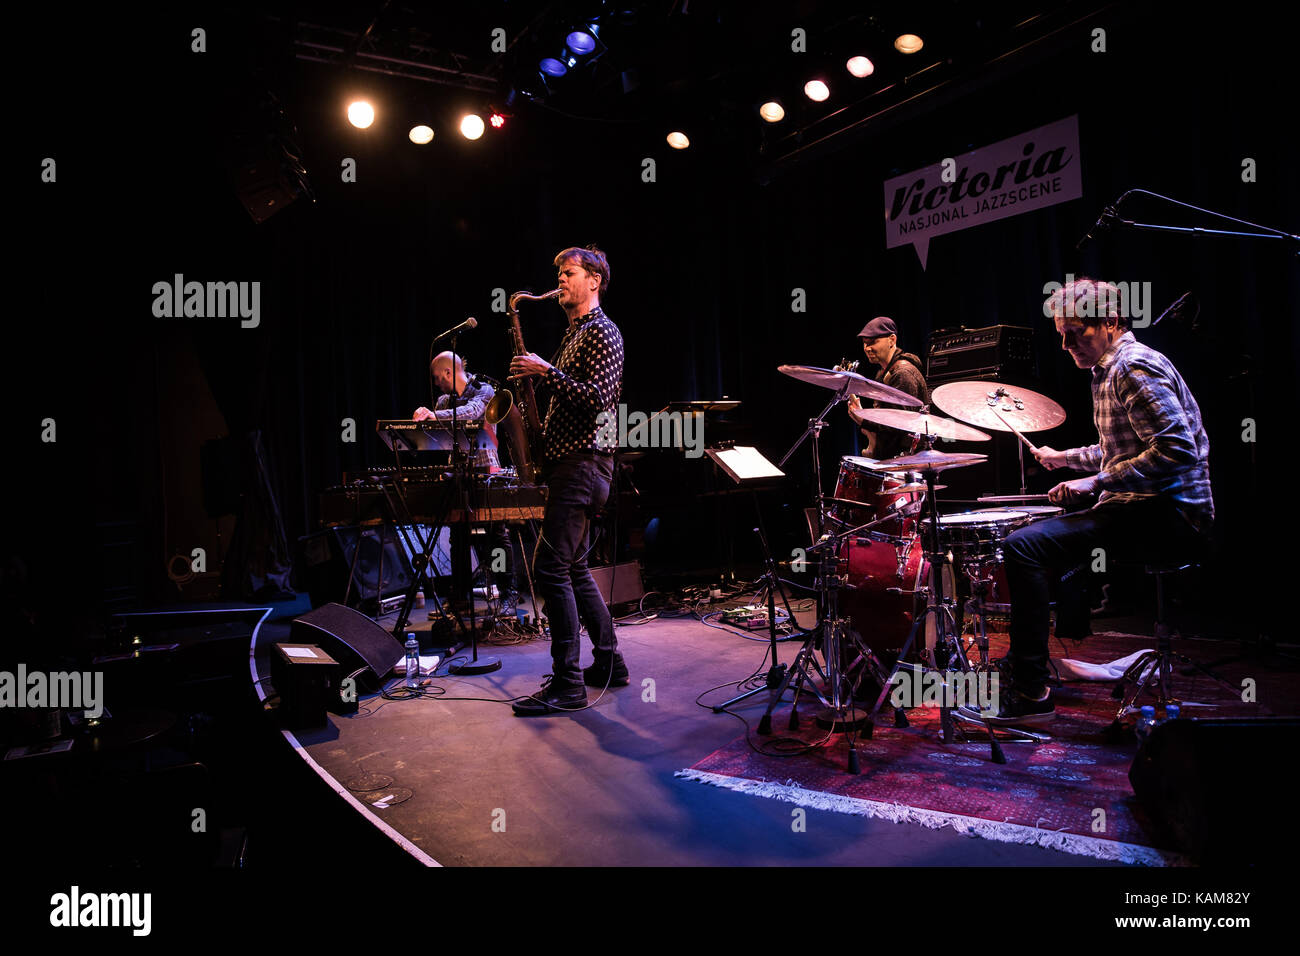 El grupo de jazz estadounidense Donny McCaslin grupo realiza un concierto en vivo en Victoria Nasjonal Jazzscene en Oslo. Aquí líder de grupo Donny McCaslin en el saxofón es visto en vivo en el escenario con el resto de la banda. Noruega, el 10/11 de 2016. Foto de stock